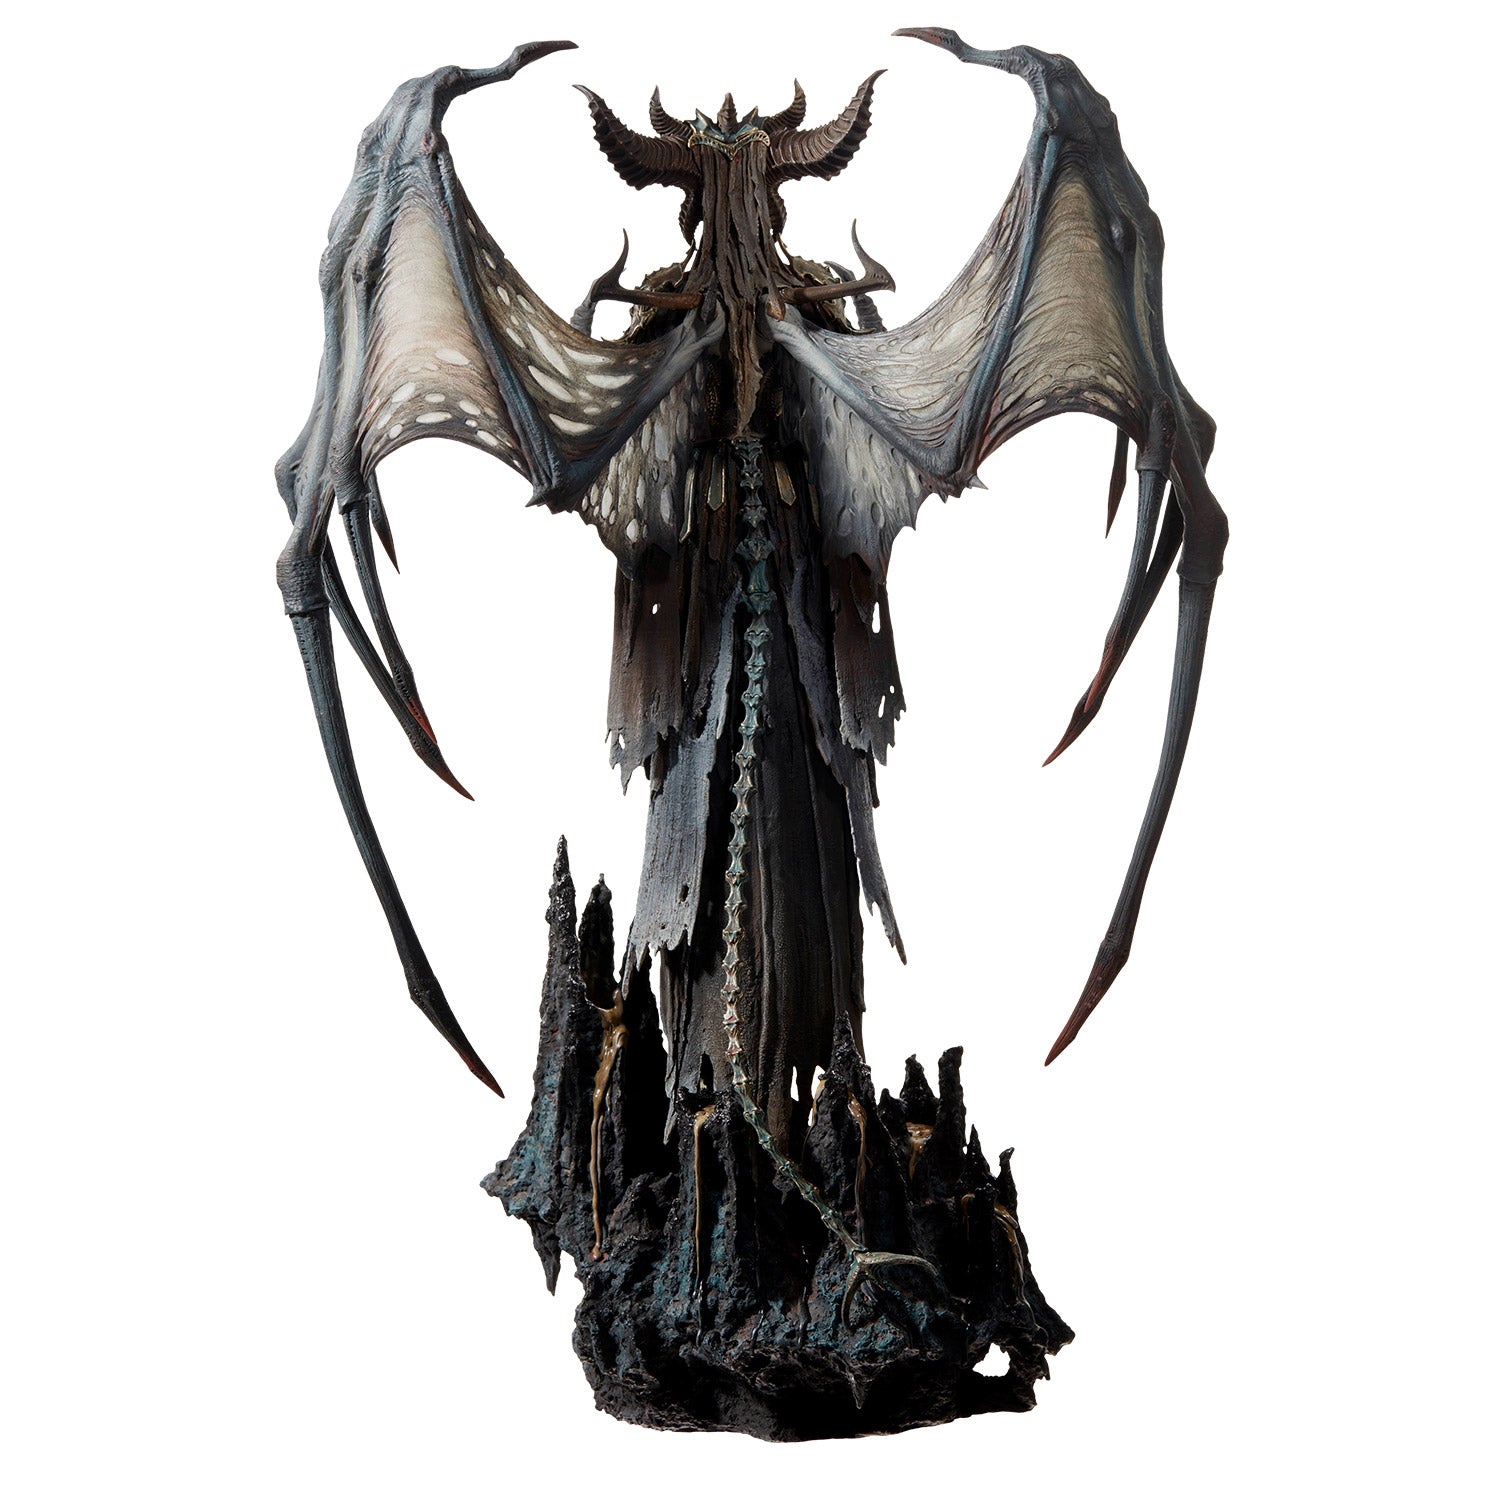 Diablo Lilith 24.5" Premium Statue in Black - Back View